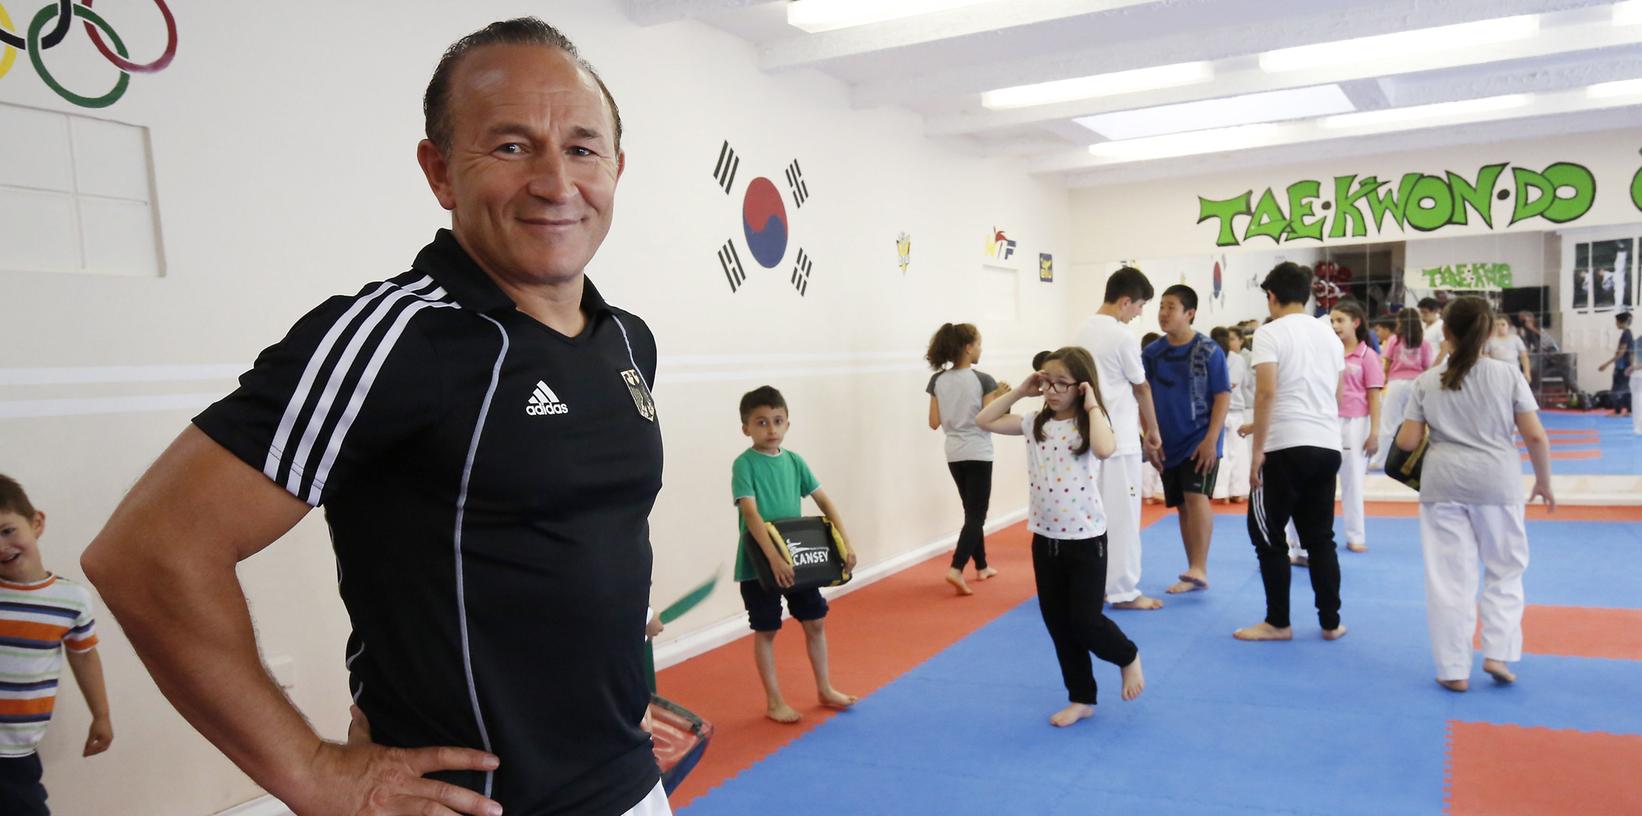 Özer Güleç ist Träger des 6. Dans  und Landestrainer der Bayer. Taekwondo Union.